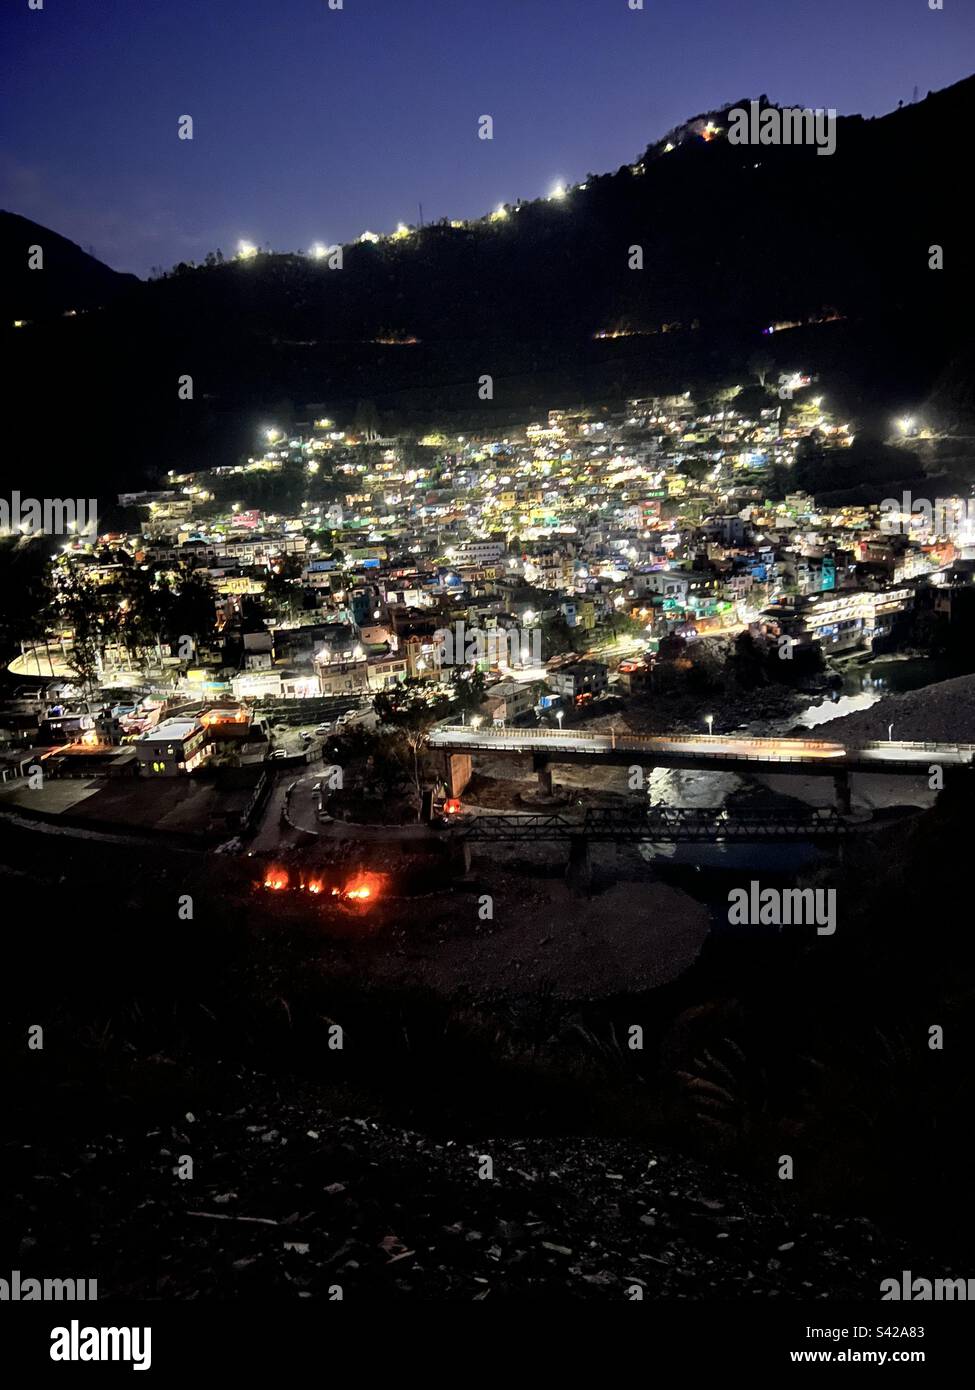 Satpuli, eine Stadt in Uttarakhand, Indien. Die Lichter bei Nacht strahlen eine wunderbare Landschaft aus. Stockfoto